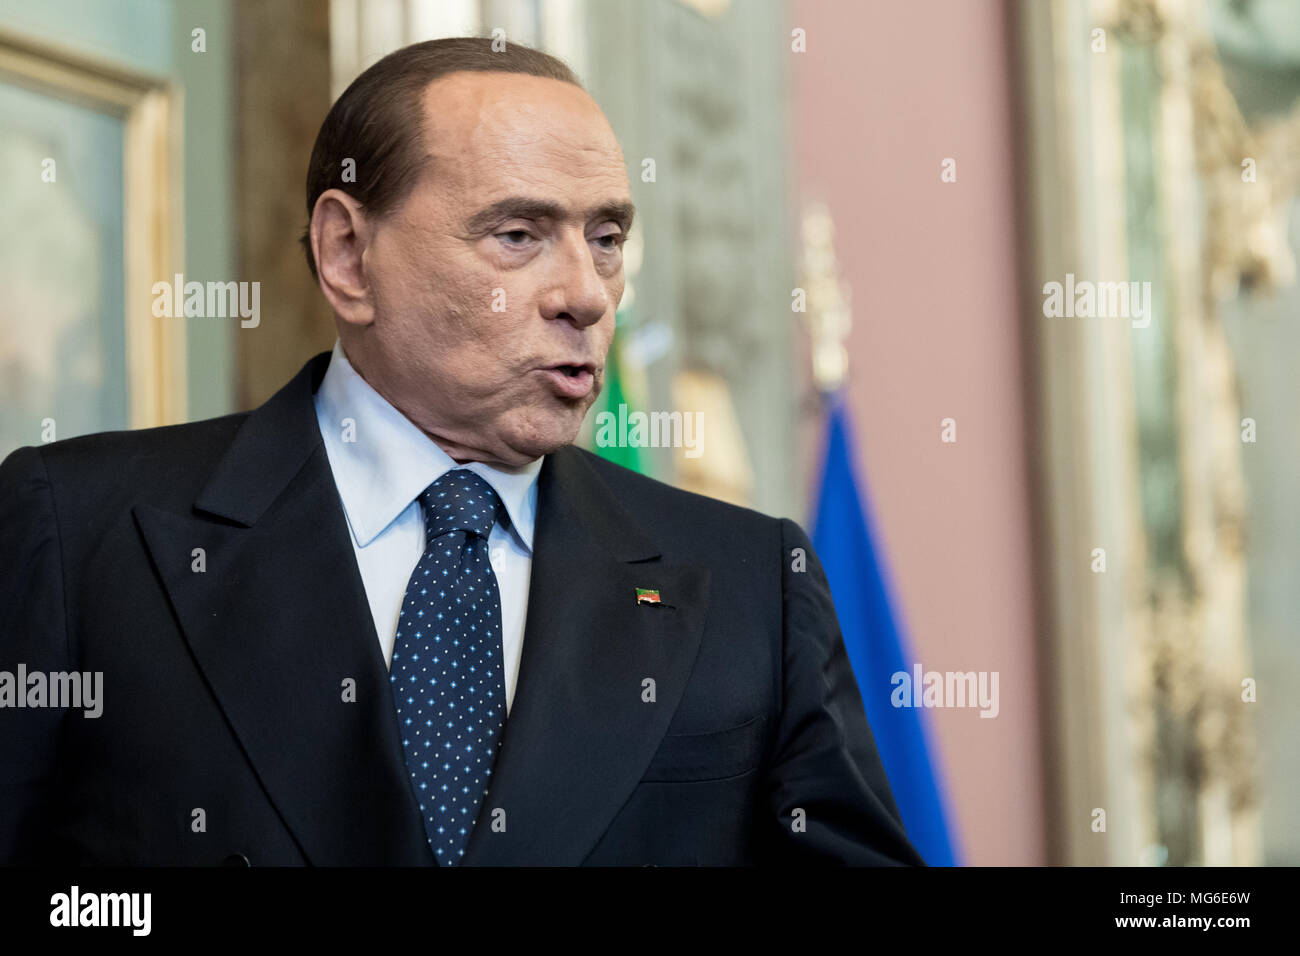 Silvio Berlusconi, líder del partido Forza Italia, después de la conferencia de prensa en el Senado de la República Italiana. Roma, Italia, 15 de abril de 2018. Foto de stock